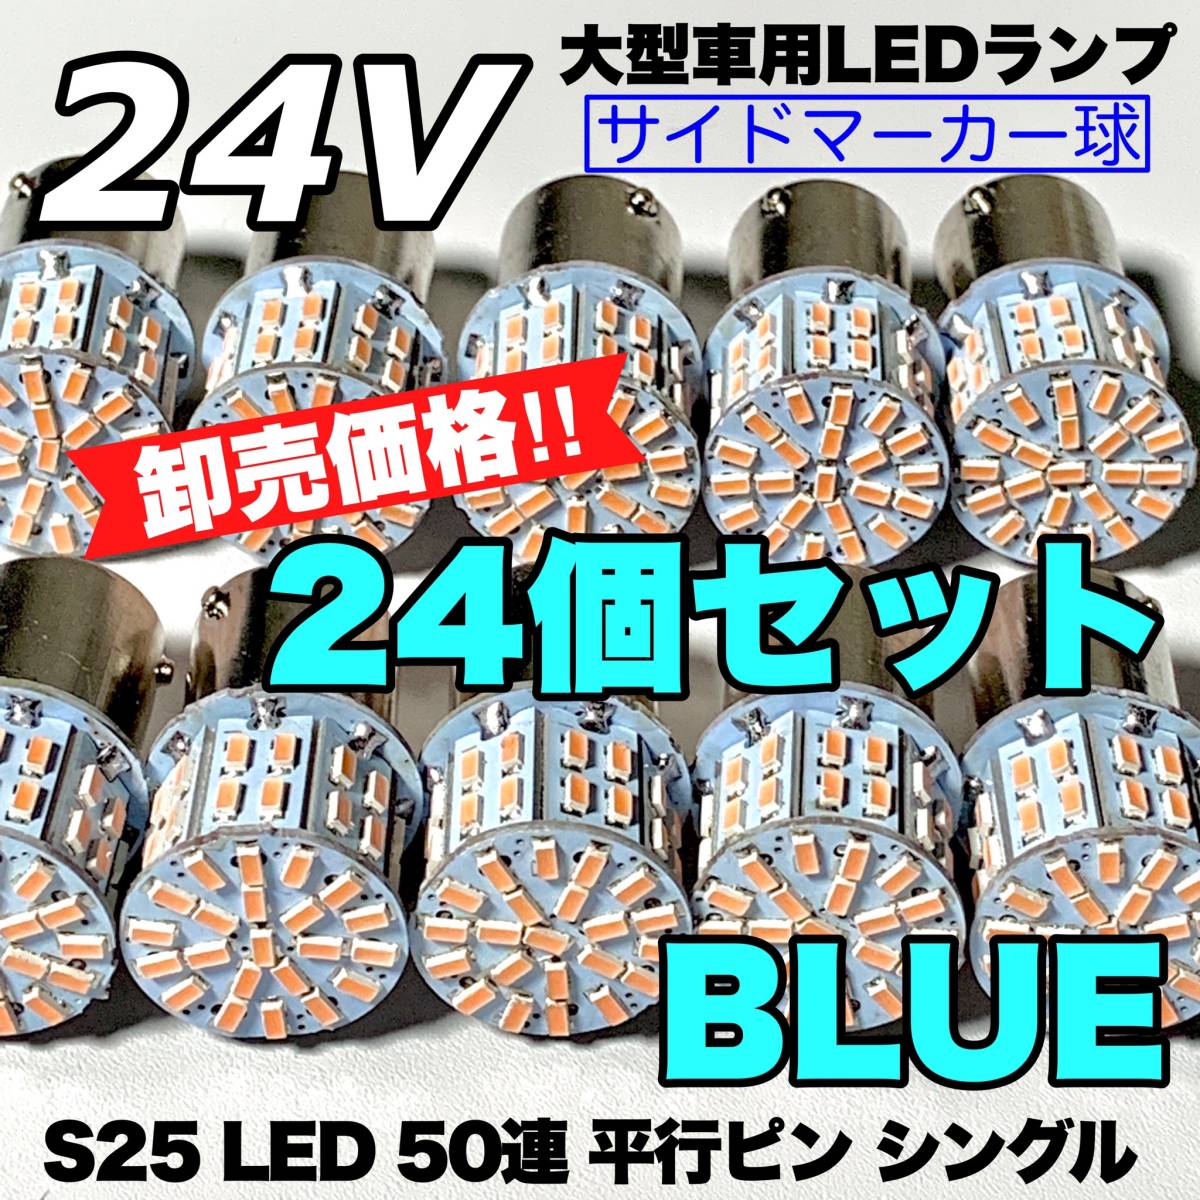 ブルー 24個セット トラック用品 LED 24V S25 平行ピン マーカー球 交換用ランプ サイドマーカー デコトラ 爆光 50連LED 青_画像1